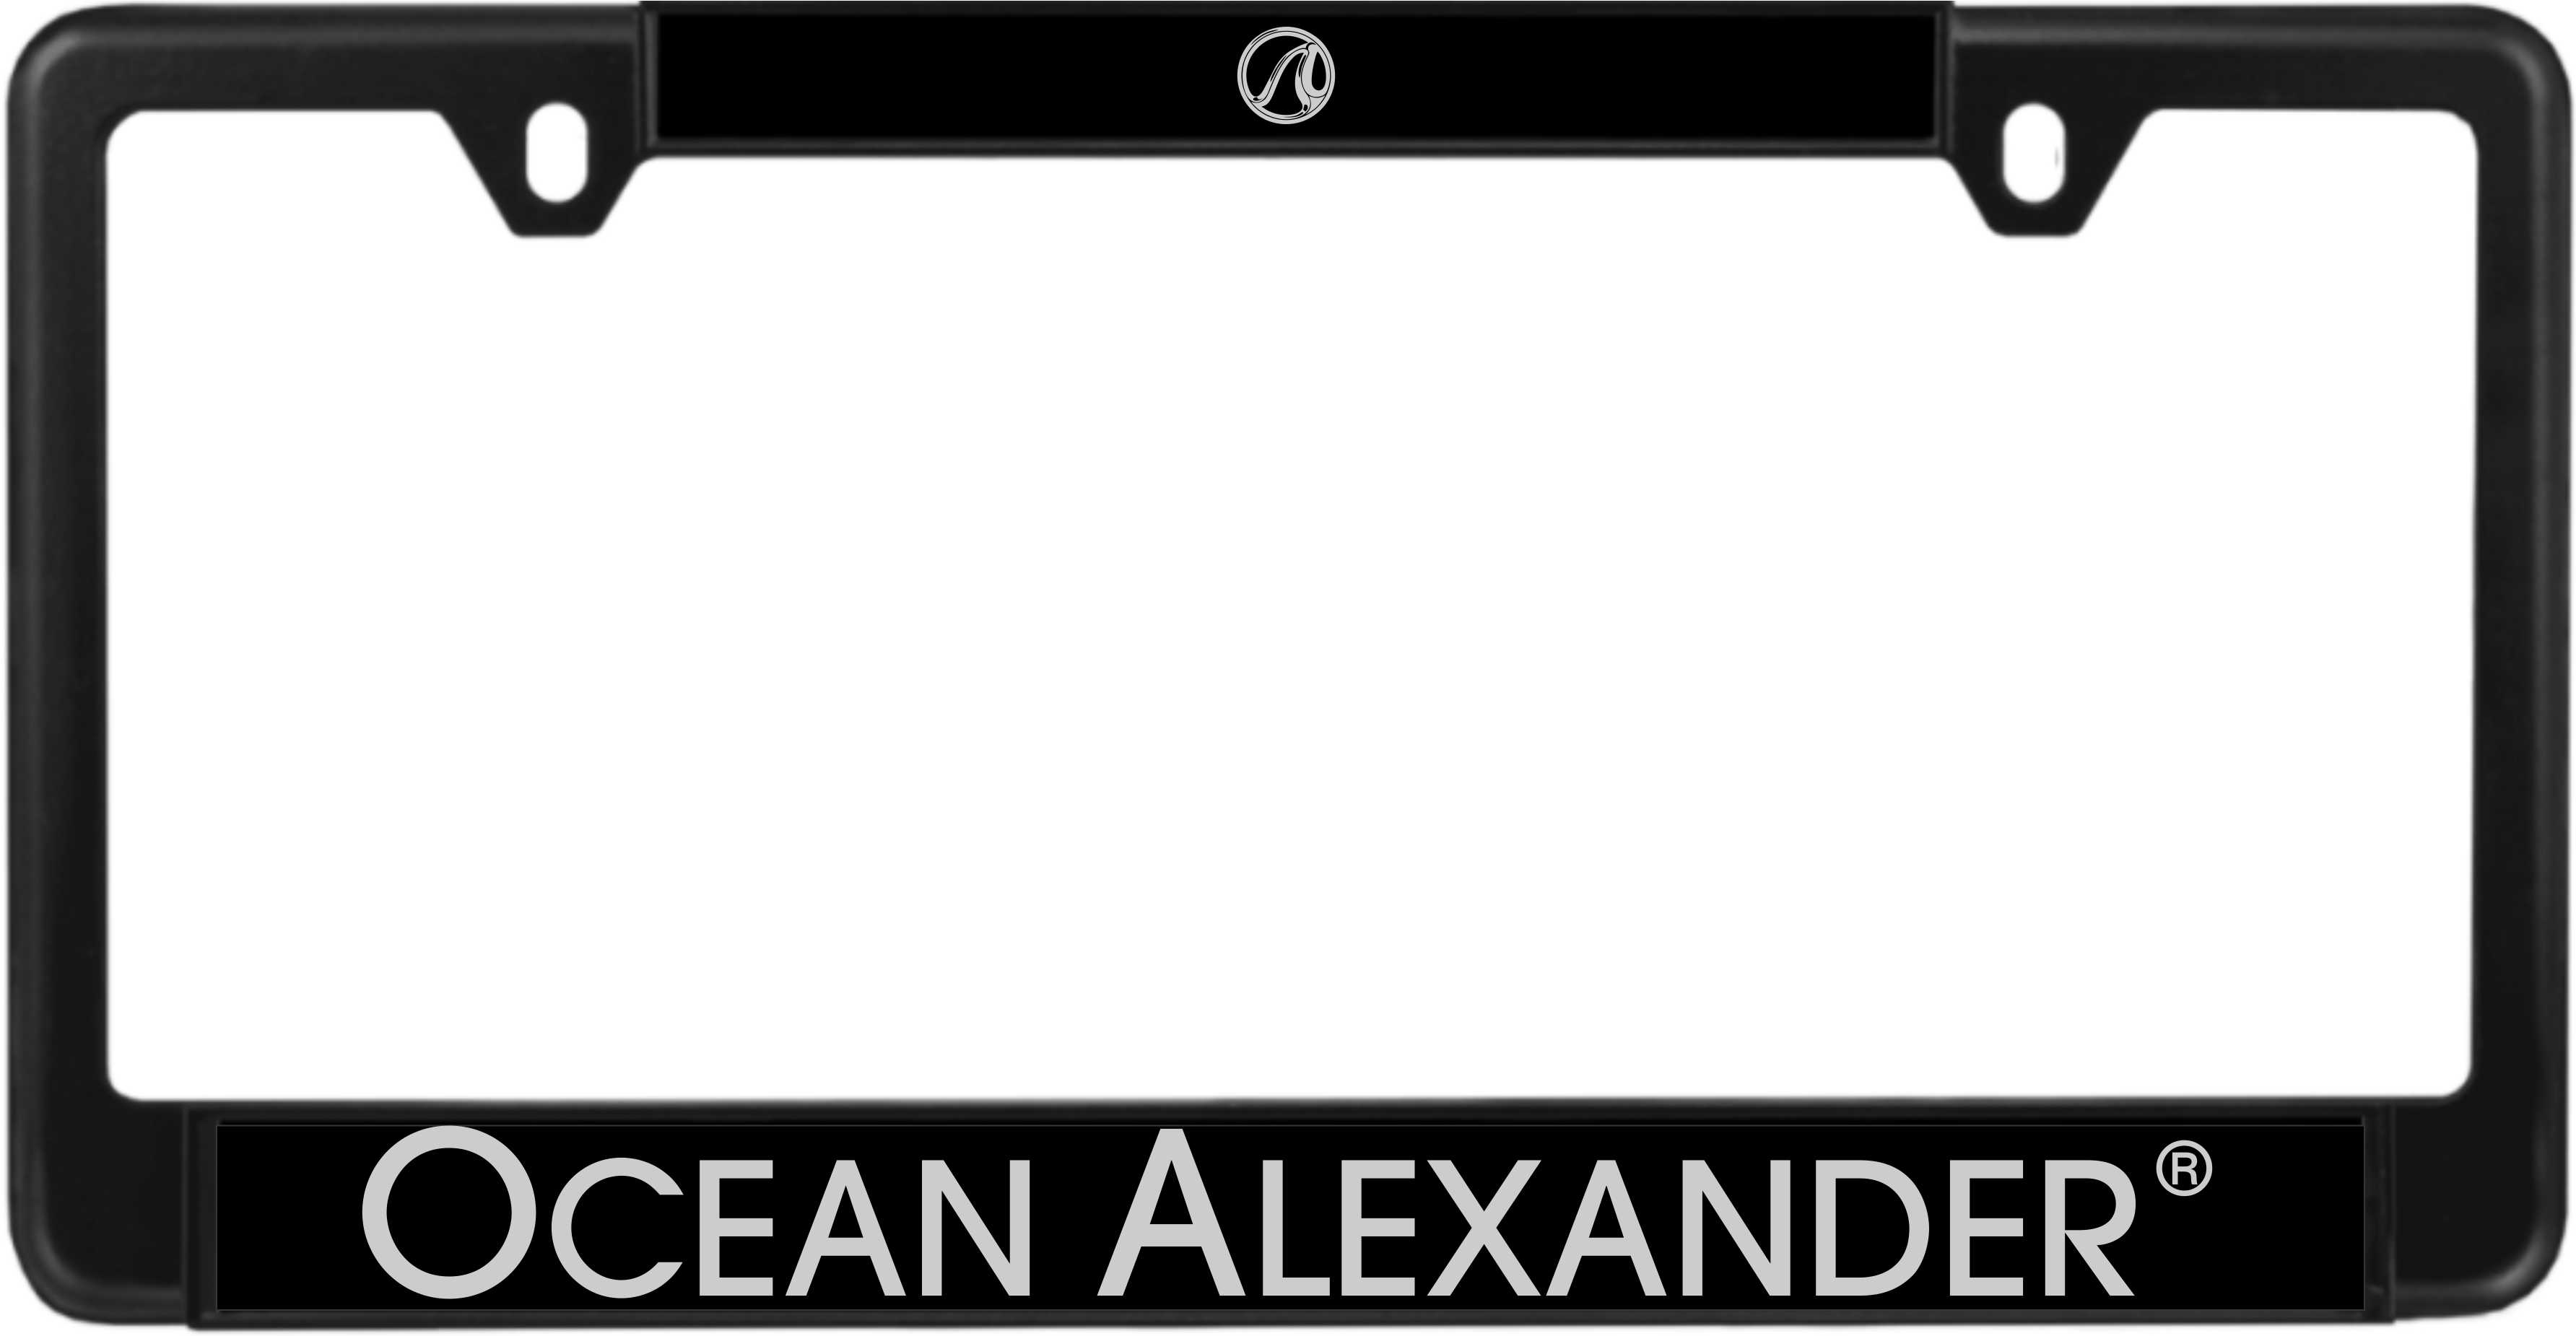 Ocean Alexander custom metal license plate frame